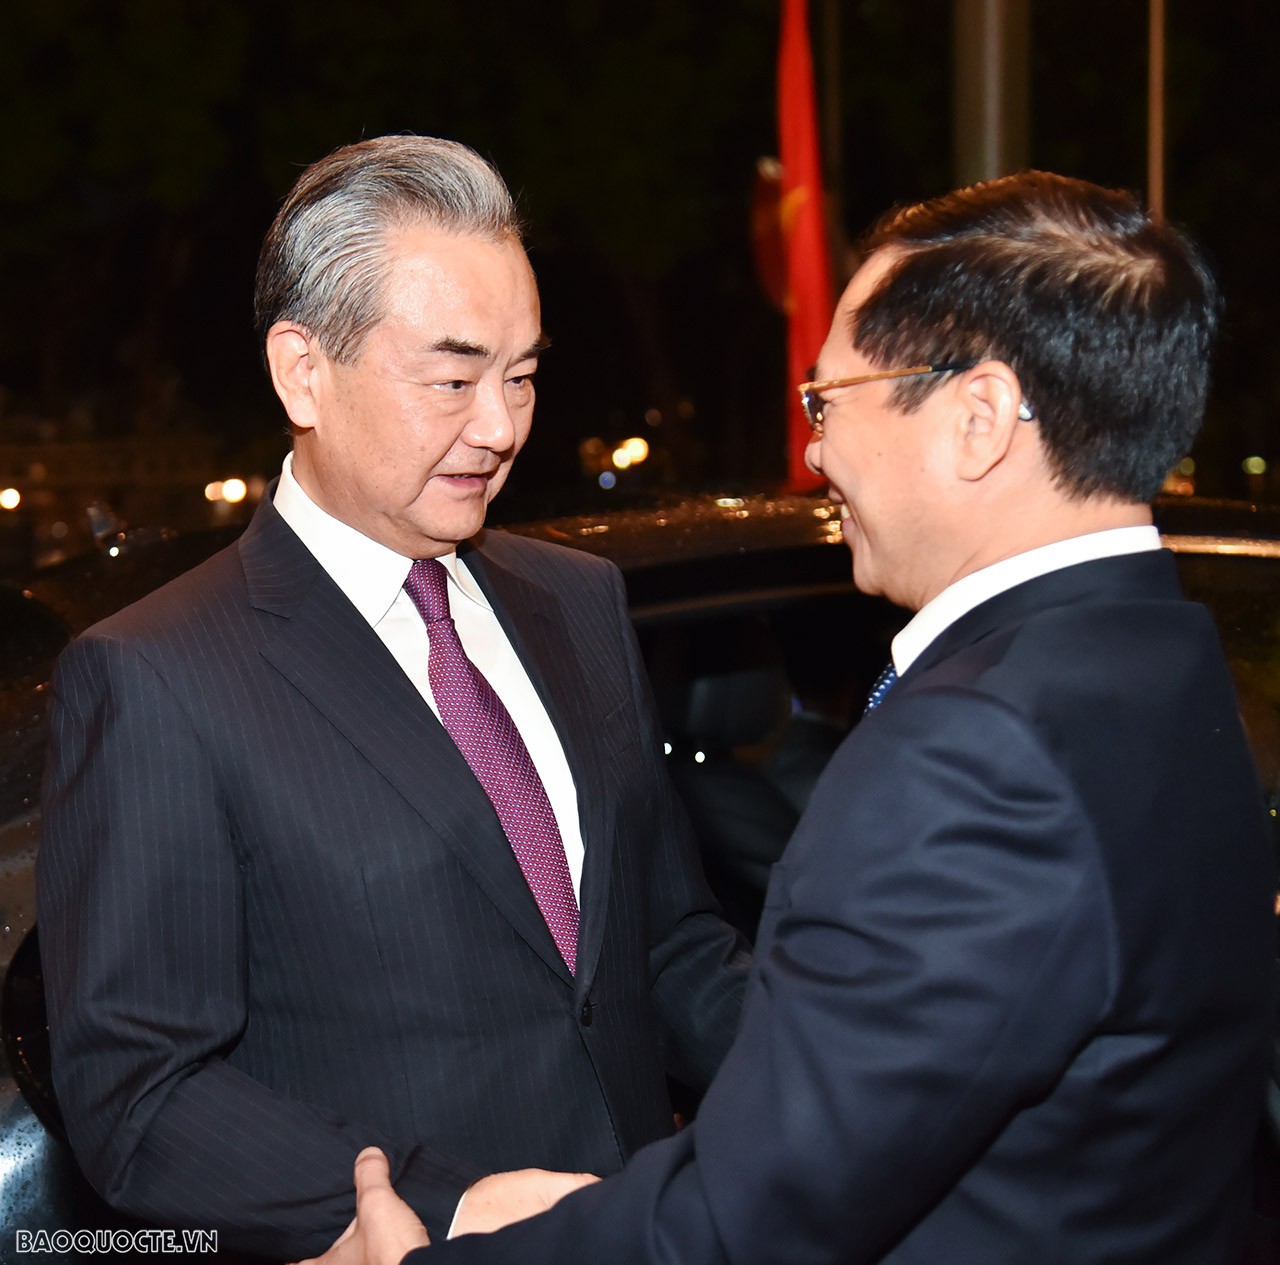 Chiều tối ngày 1/12, tại Nhà khách Chính phủ, Bộ trưởng Ngoại giao Bùi Thanh Sơn đã đón và hội đàm với Bộ trưởng Ngoại giao Trung Quốc Vương Nghị.